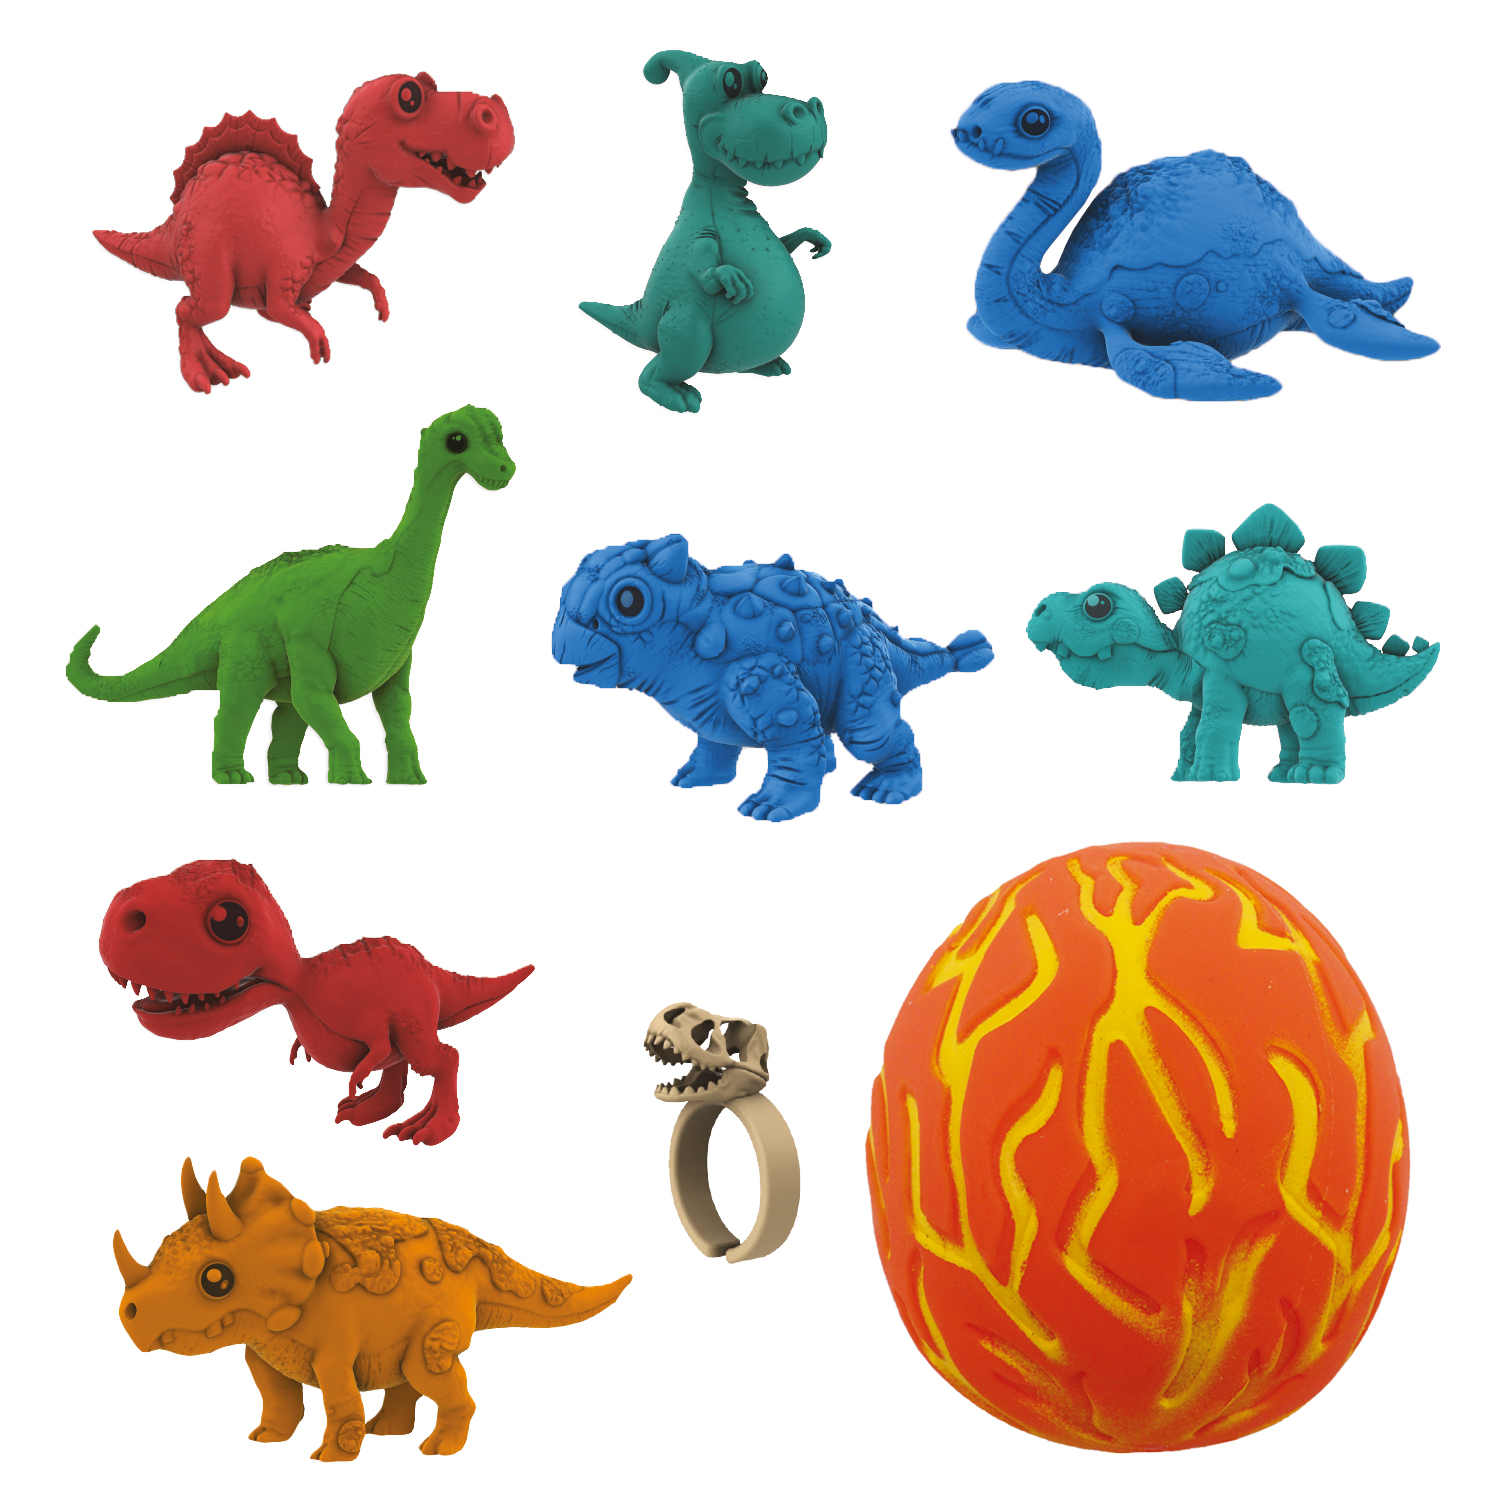 Коллекционная фигурка-сюрприз динозавра в яйце-сквише Lava Egg, 8 героев, Crazy Dino, CD02 коллекционная фигурка сюрприз динозавра в яйце сквише lava egg 8 героев crazy dino cd02